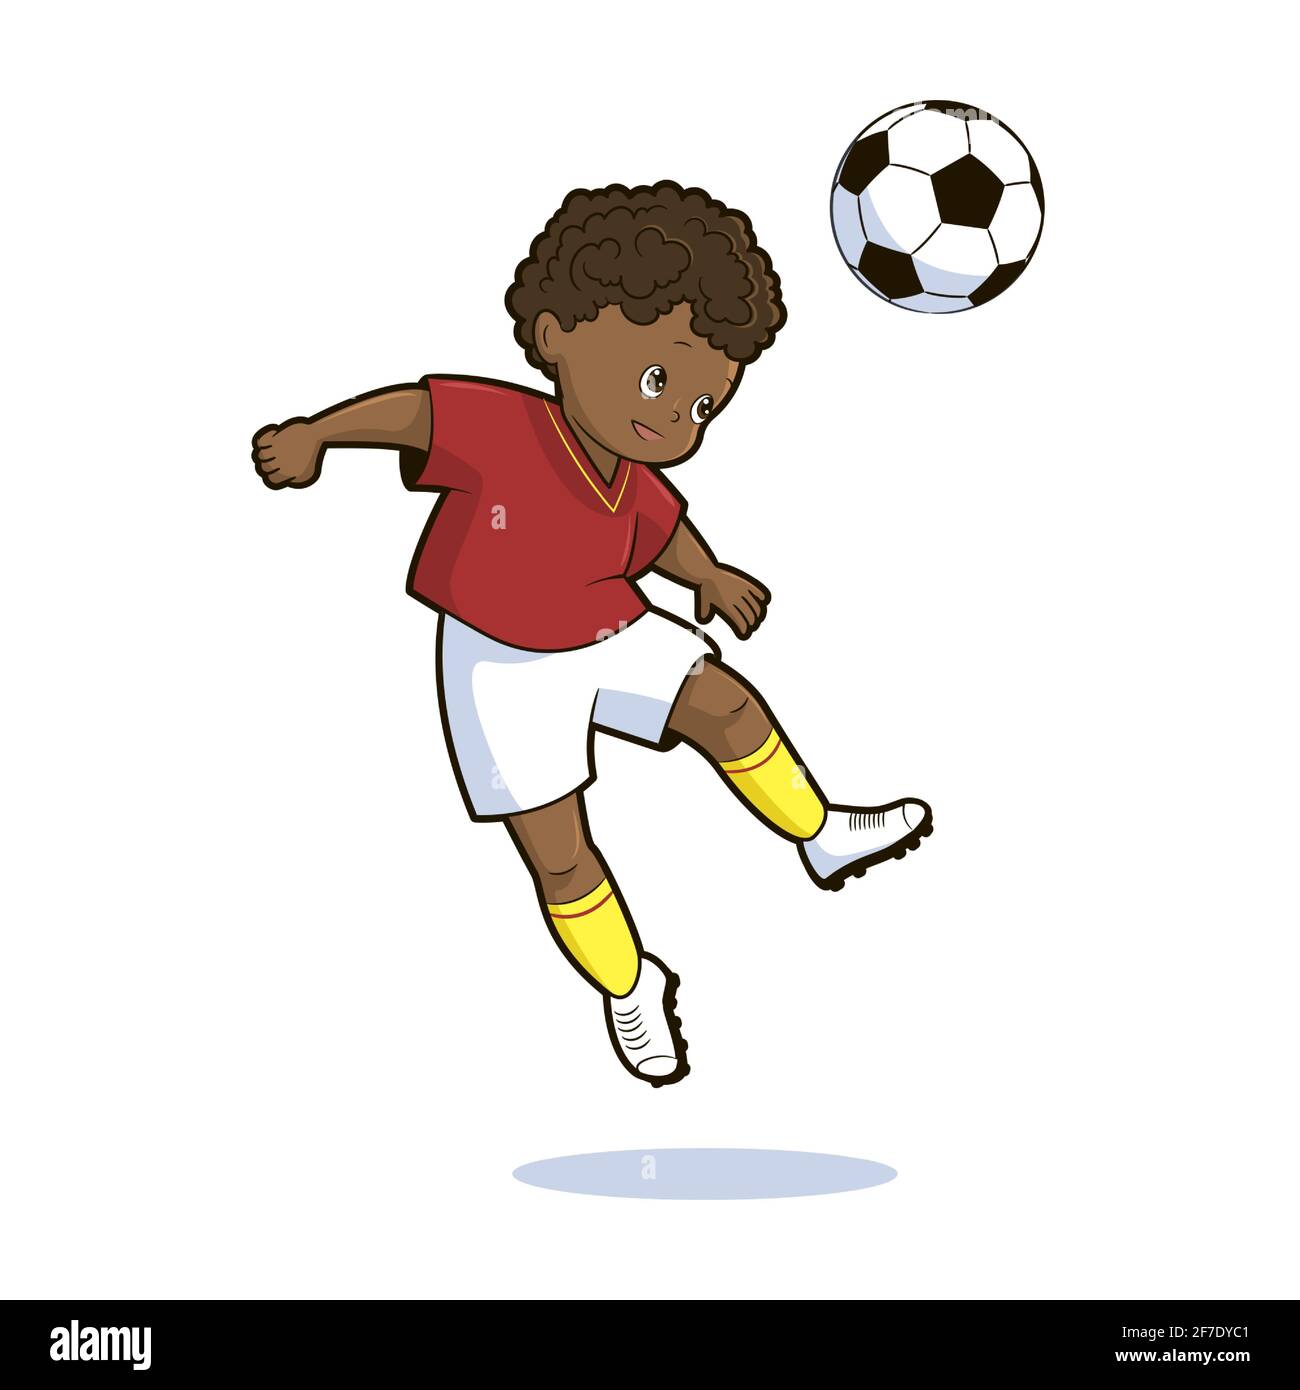 Fußballspieler, Teenager-Junge in einem roten Sporthemd und Shorts kickt einen Fußball. Vektorgrafik im Cartoon-Stil isoliert auf weißem Hintergrund. Stock Vektor